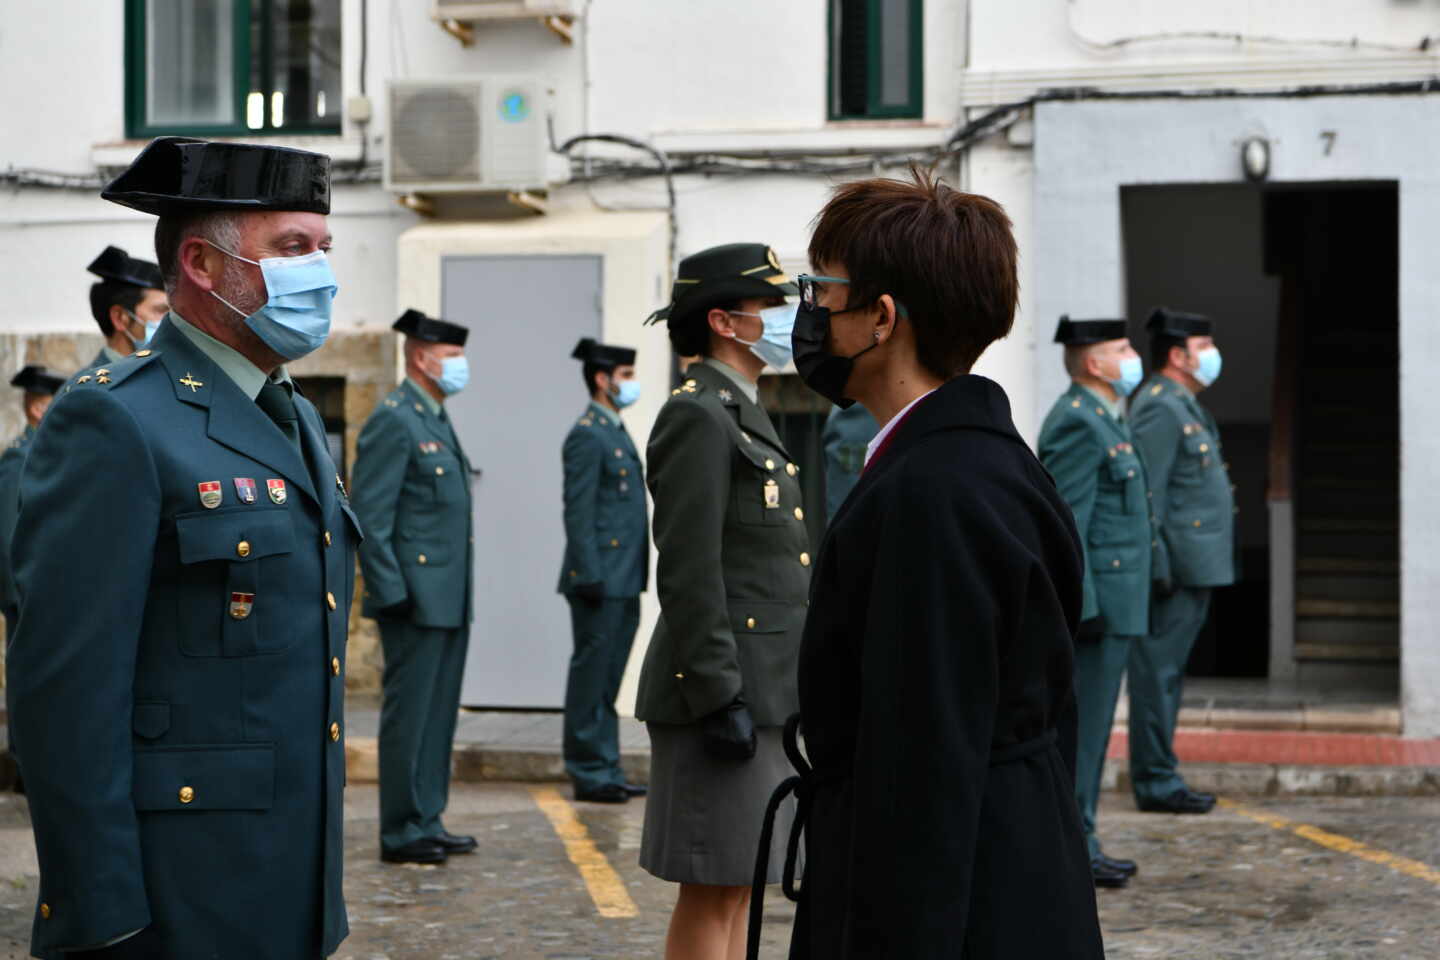 La directora general de la Guardia Civil, María Gámez, saluda a un agente de la Guardia Civil durante su visita a Ceuta.